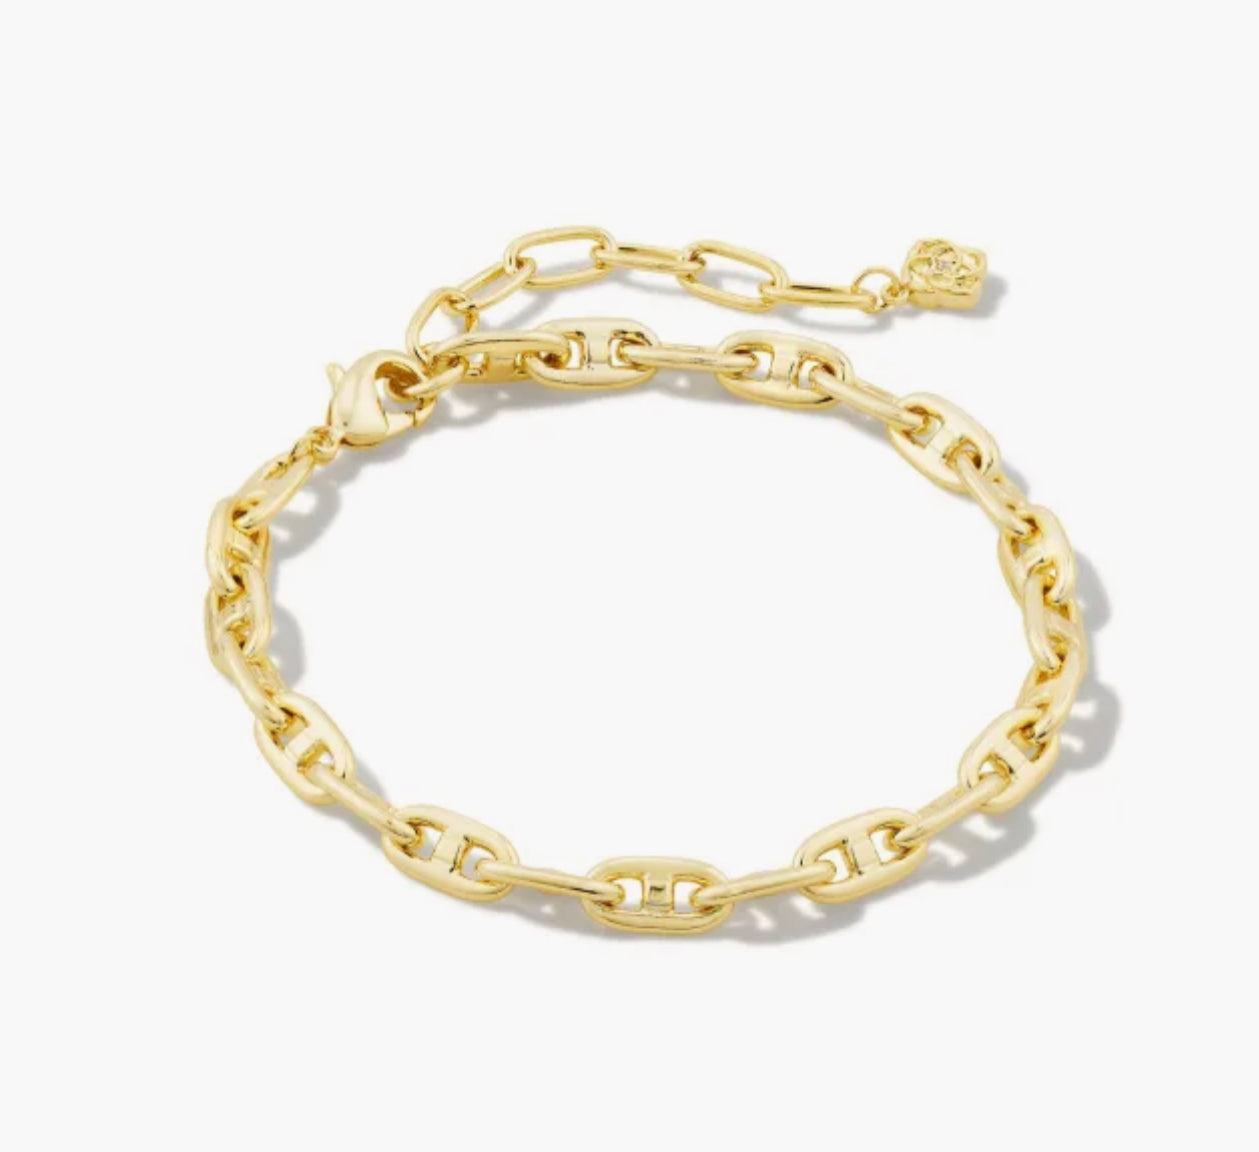 Kendra Scott-Bailey Chain Bracelet in Gold 9608851467